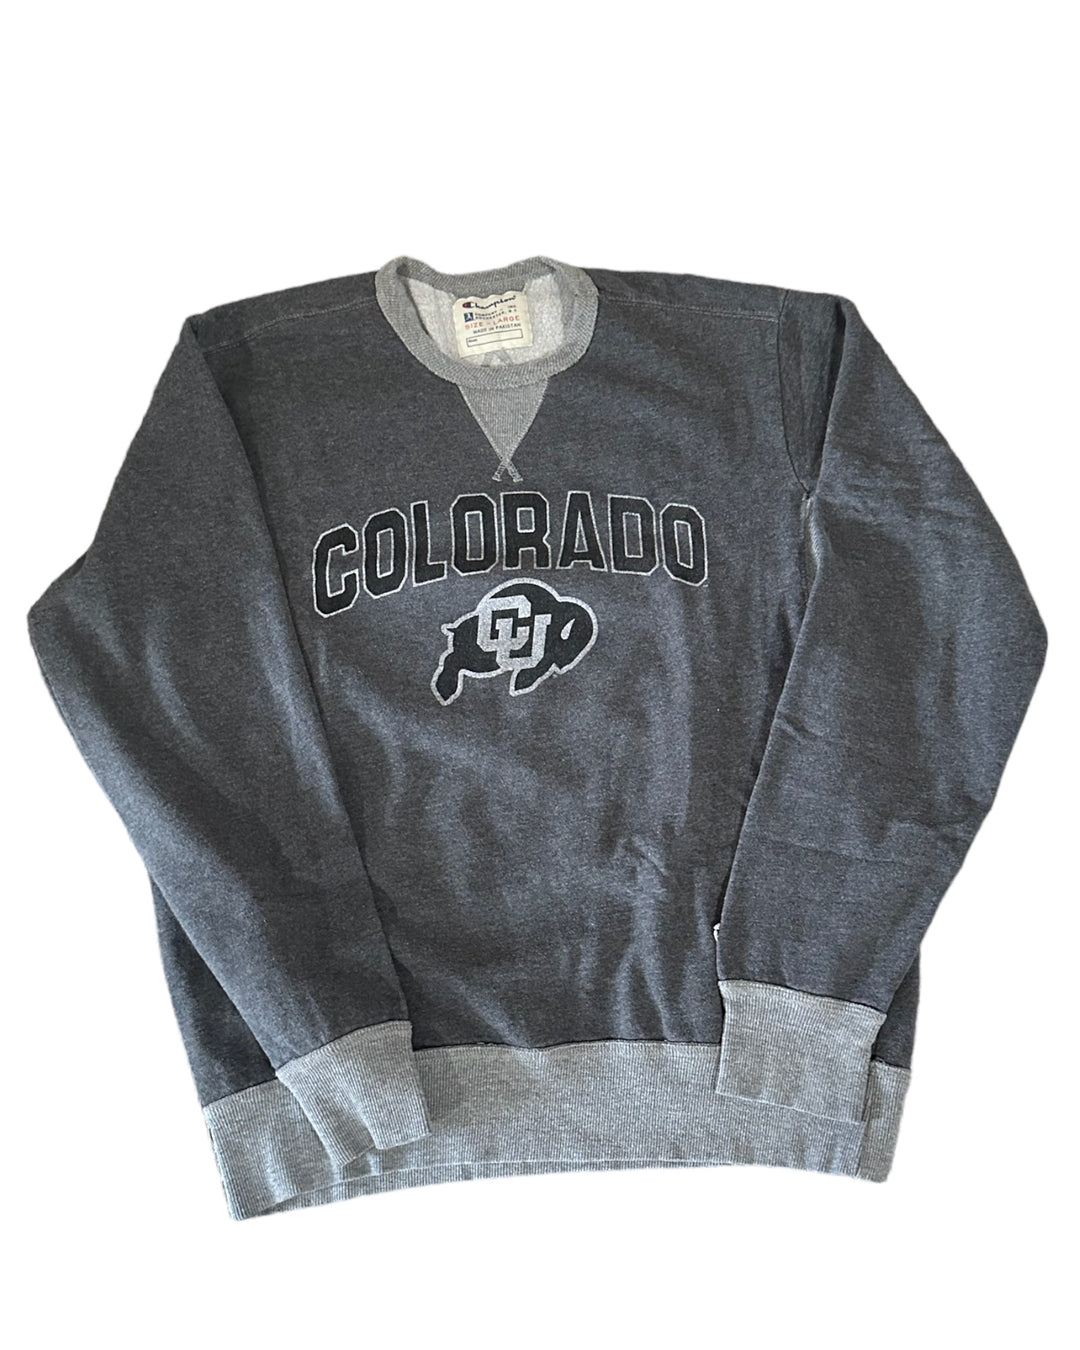 Colorado Vintage Sweatshirt